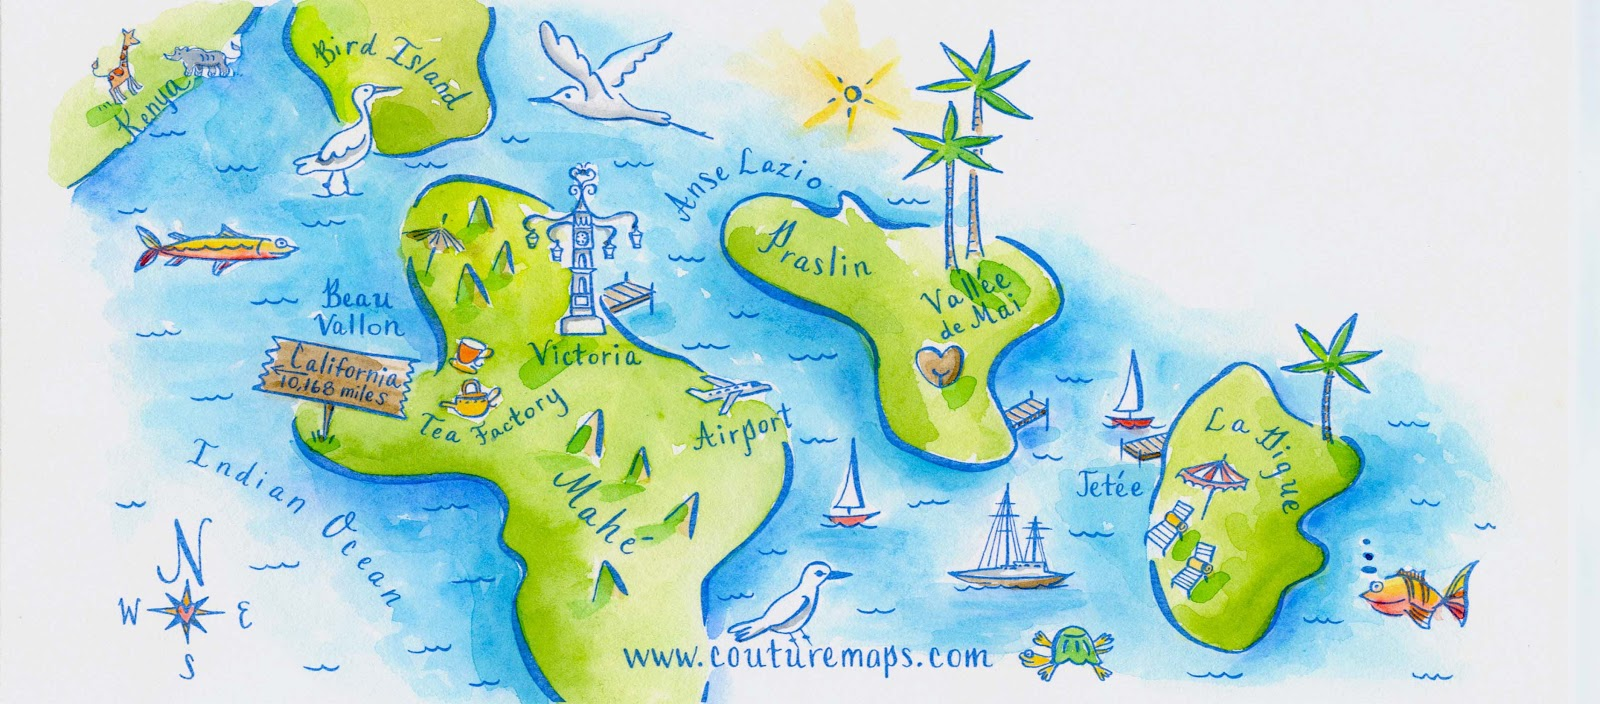 Путешествие мечты на английском. Карта путешествия по островам. Карта путешествия по островам для детей. Карта морского путешествия для детей. Карта путешествий для дошкольников.